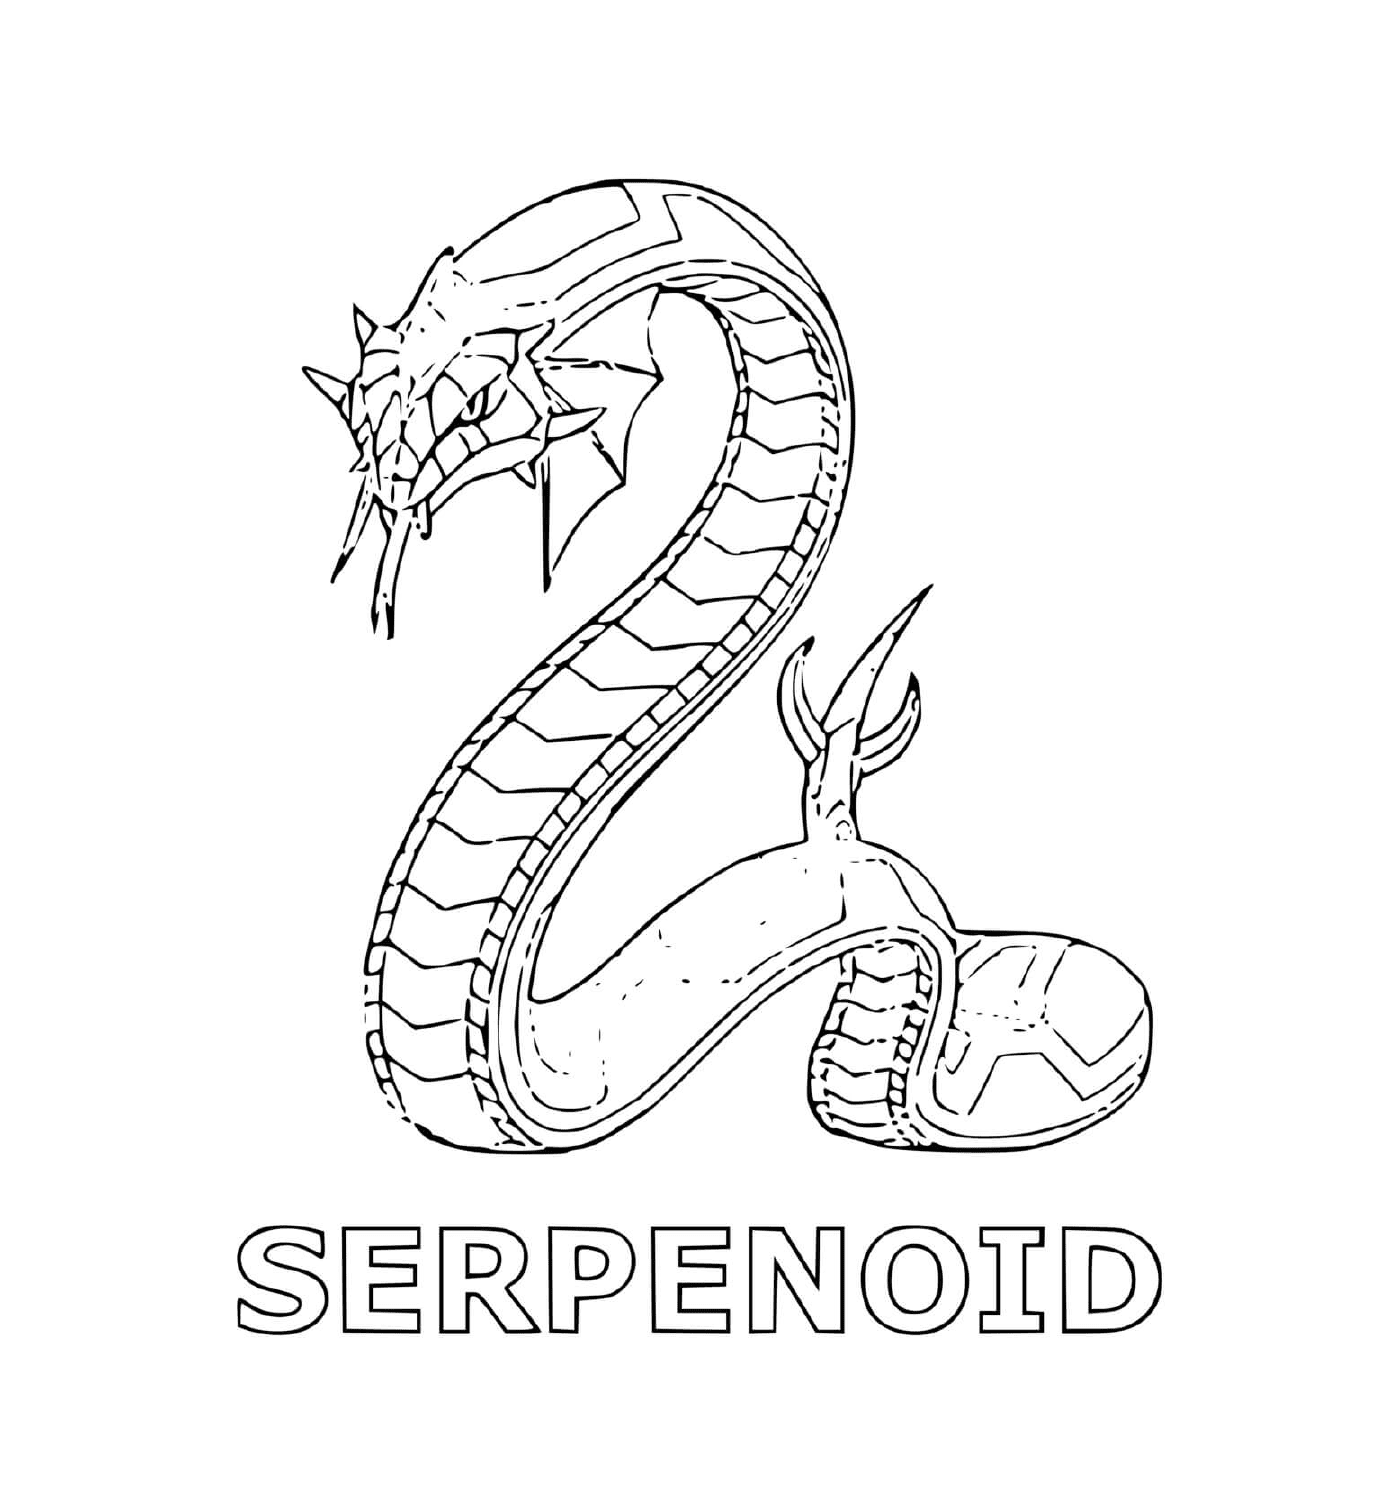  uma cobra com a palavra serpenóide por baixo 